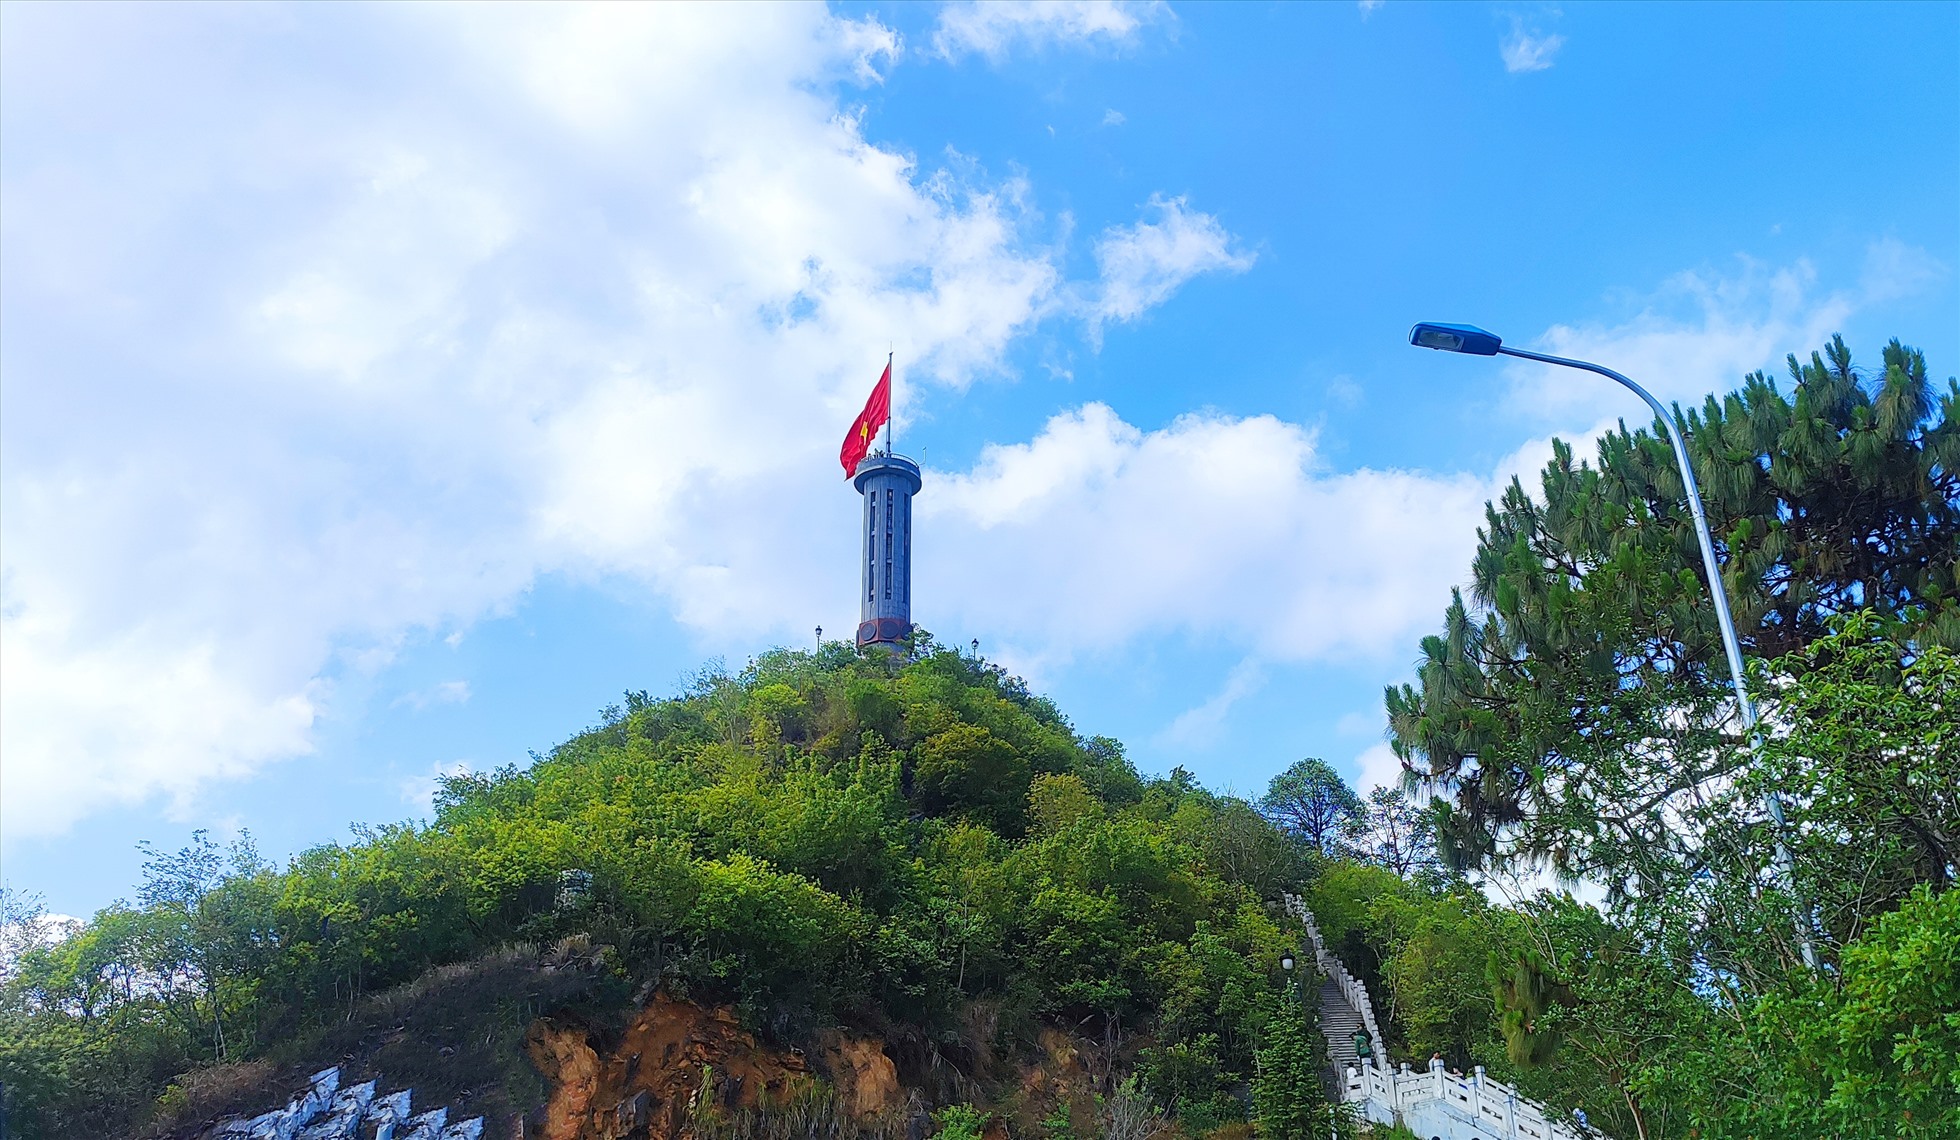 Nằm cách TP. Hà Giang 154km, Cột cờ Lũng Cú được xây dựng trên đỉnh núi Rồng với độ cao 1.468m so với mực nước biển. Đây chính là niềm tự hào của dân tộc Việt Nam trong công cuộc giữ gìn sự toàn vẹn lãnh thổ.